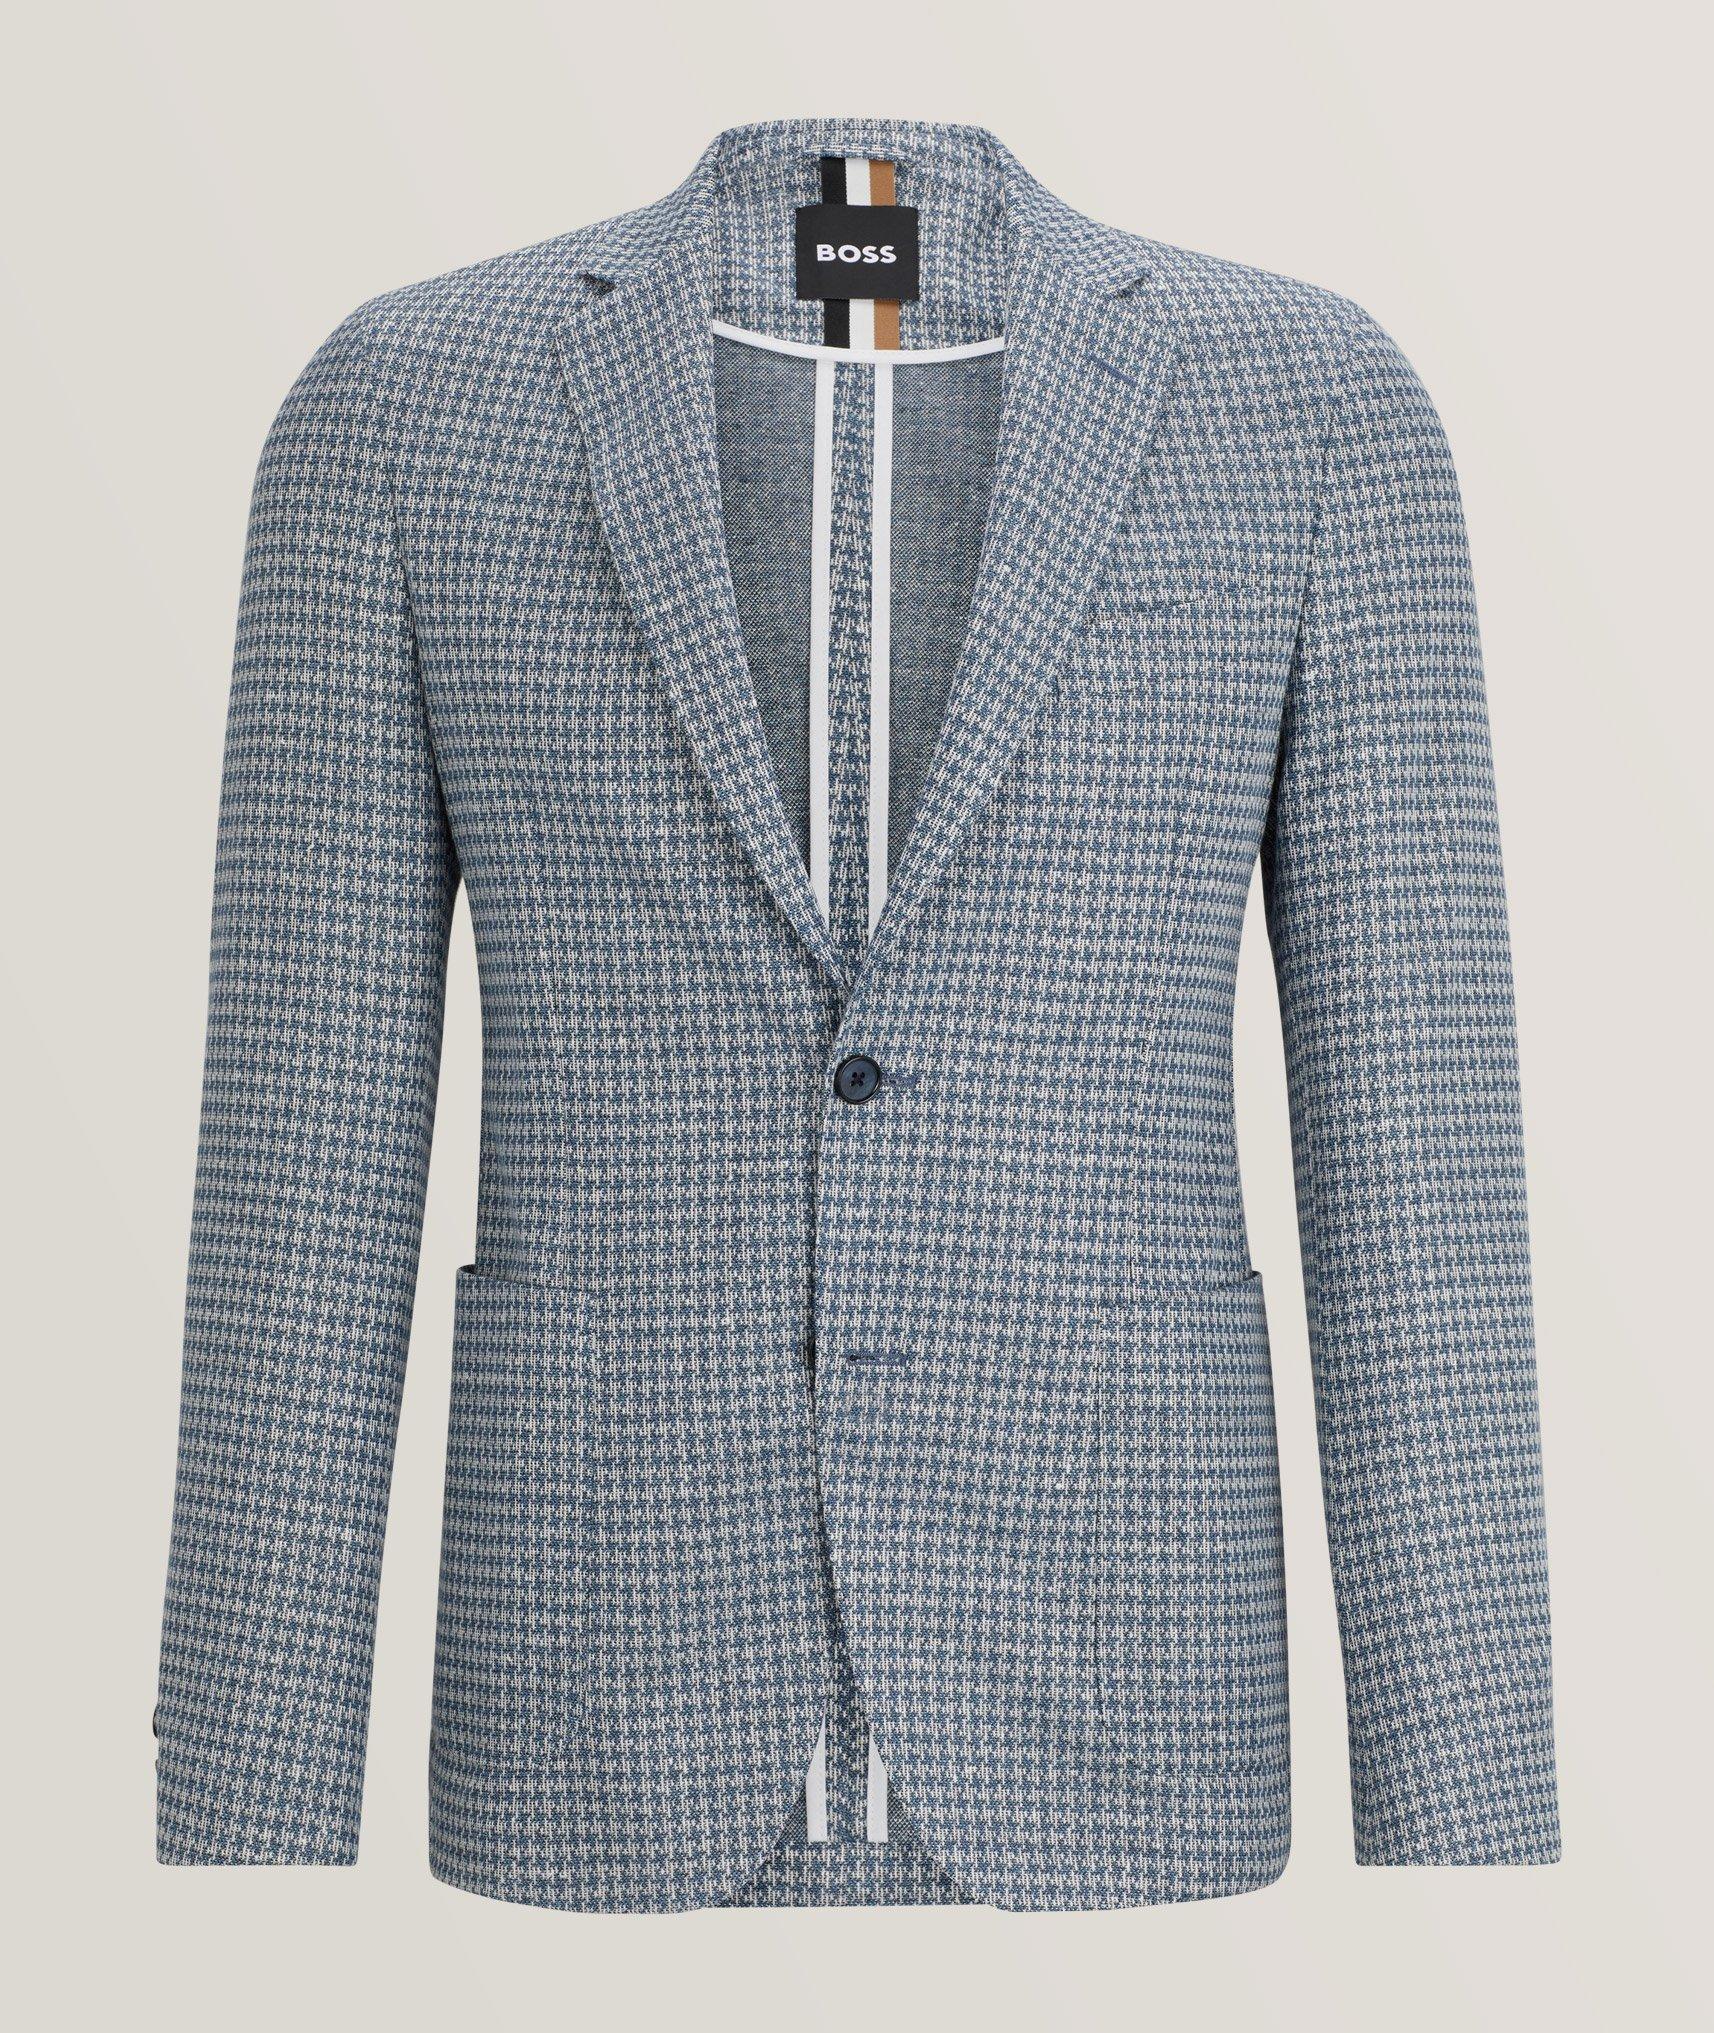 BOSS Hanry Neat Pattern Linen-Blend Sport Jacket | Sport Jackets ...